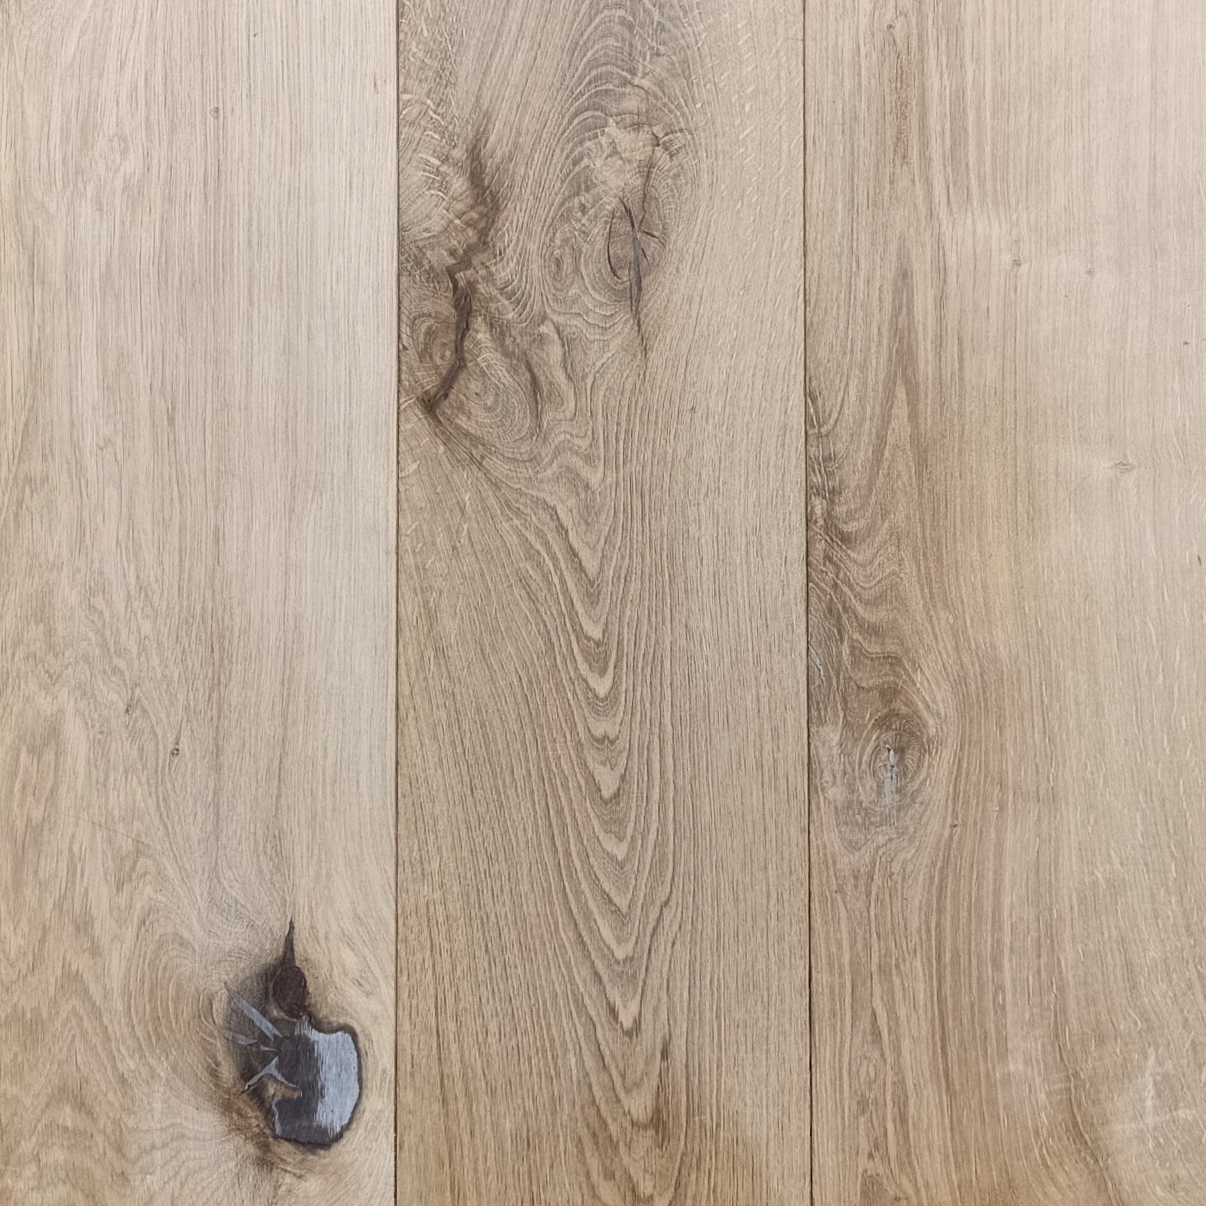 5 8 X 7 28 Unfinished Wide Plank, French White Oak Hardwood Floors